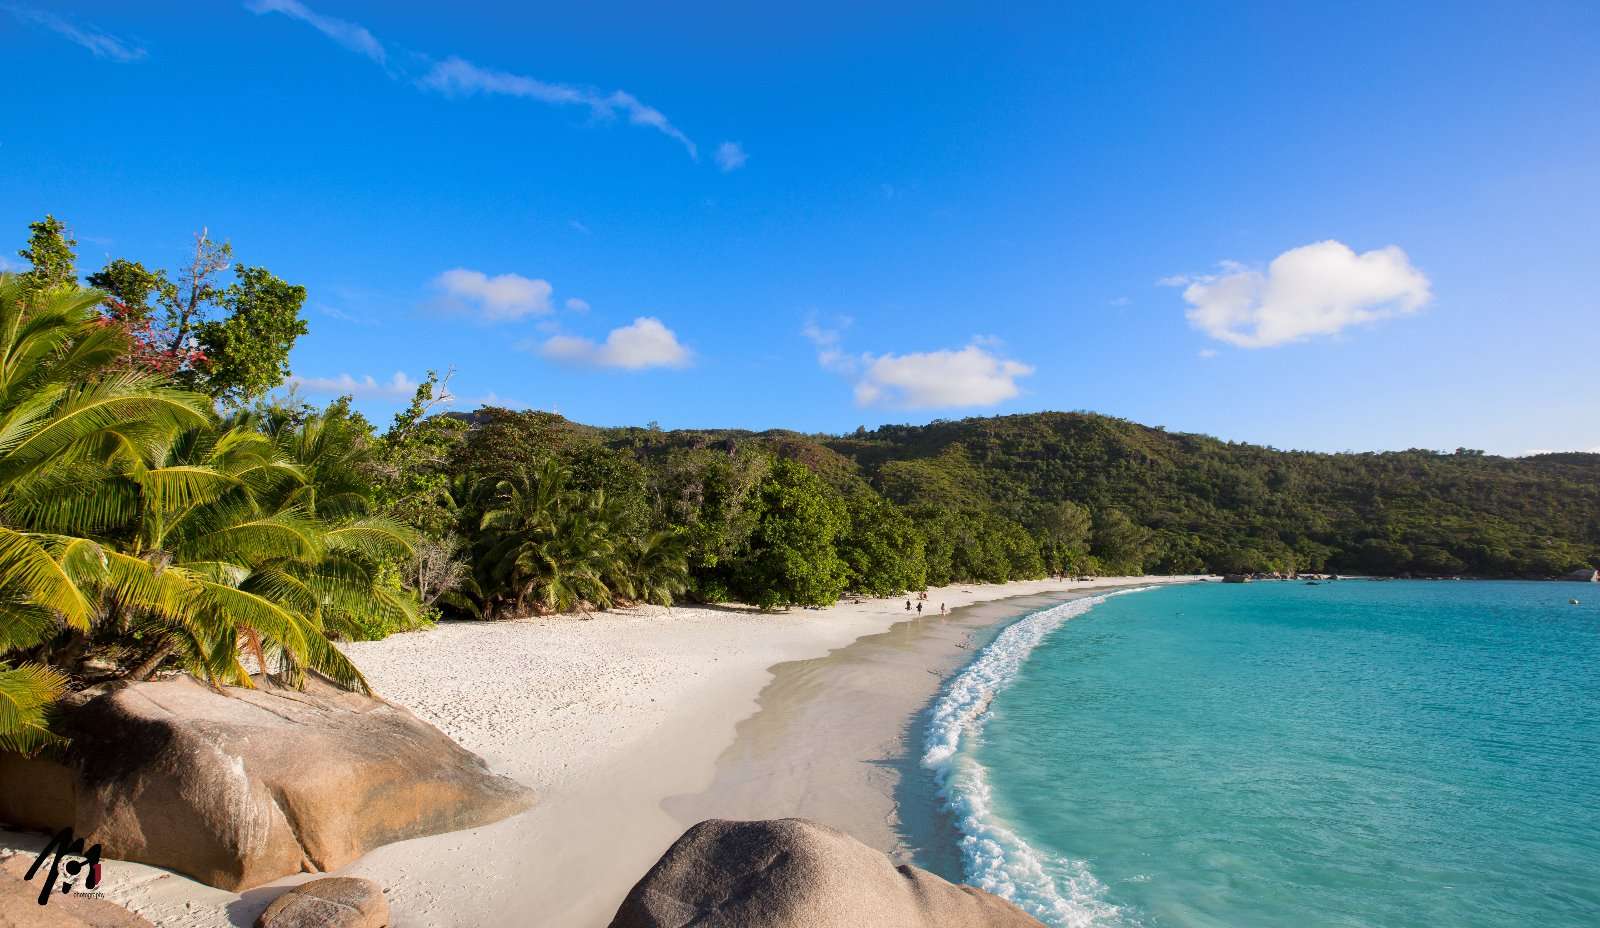 Пляж на Сейшельских островах пазл онлайн